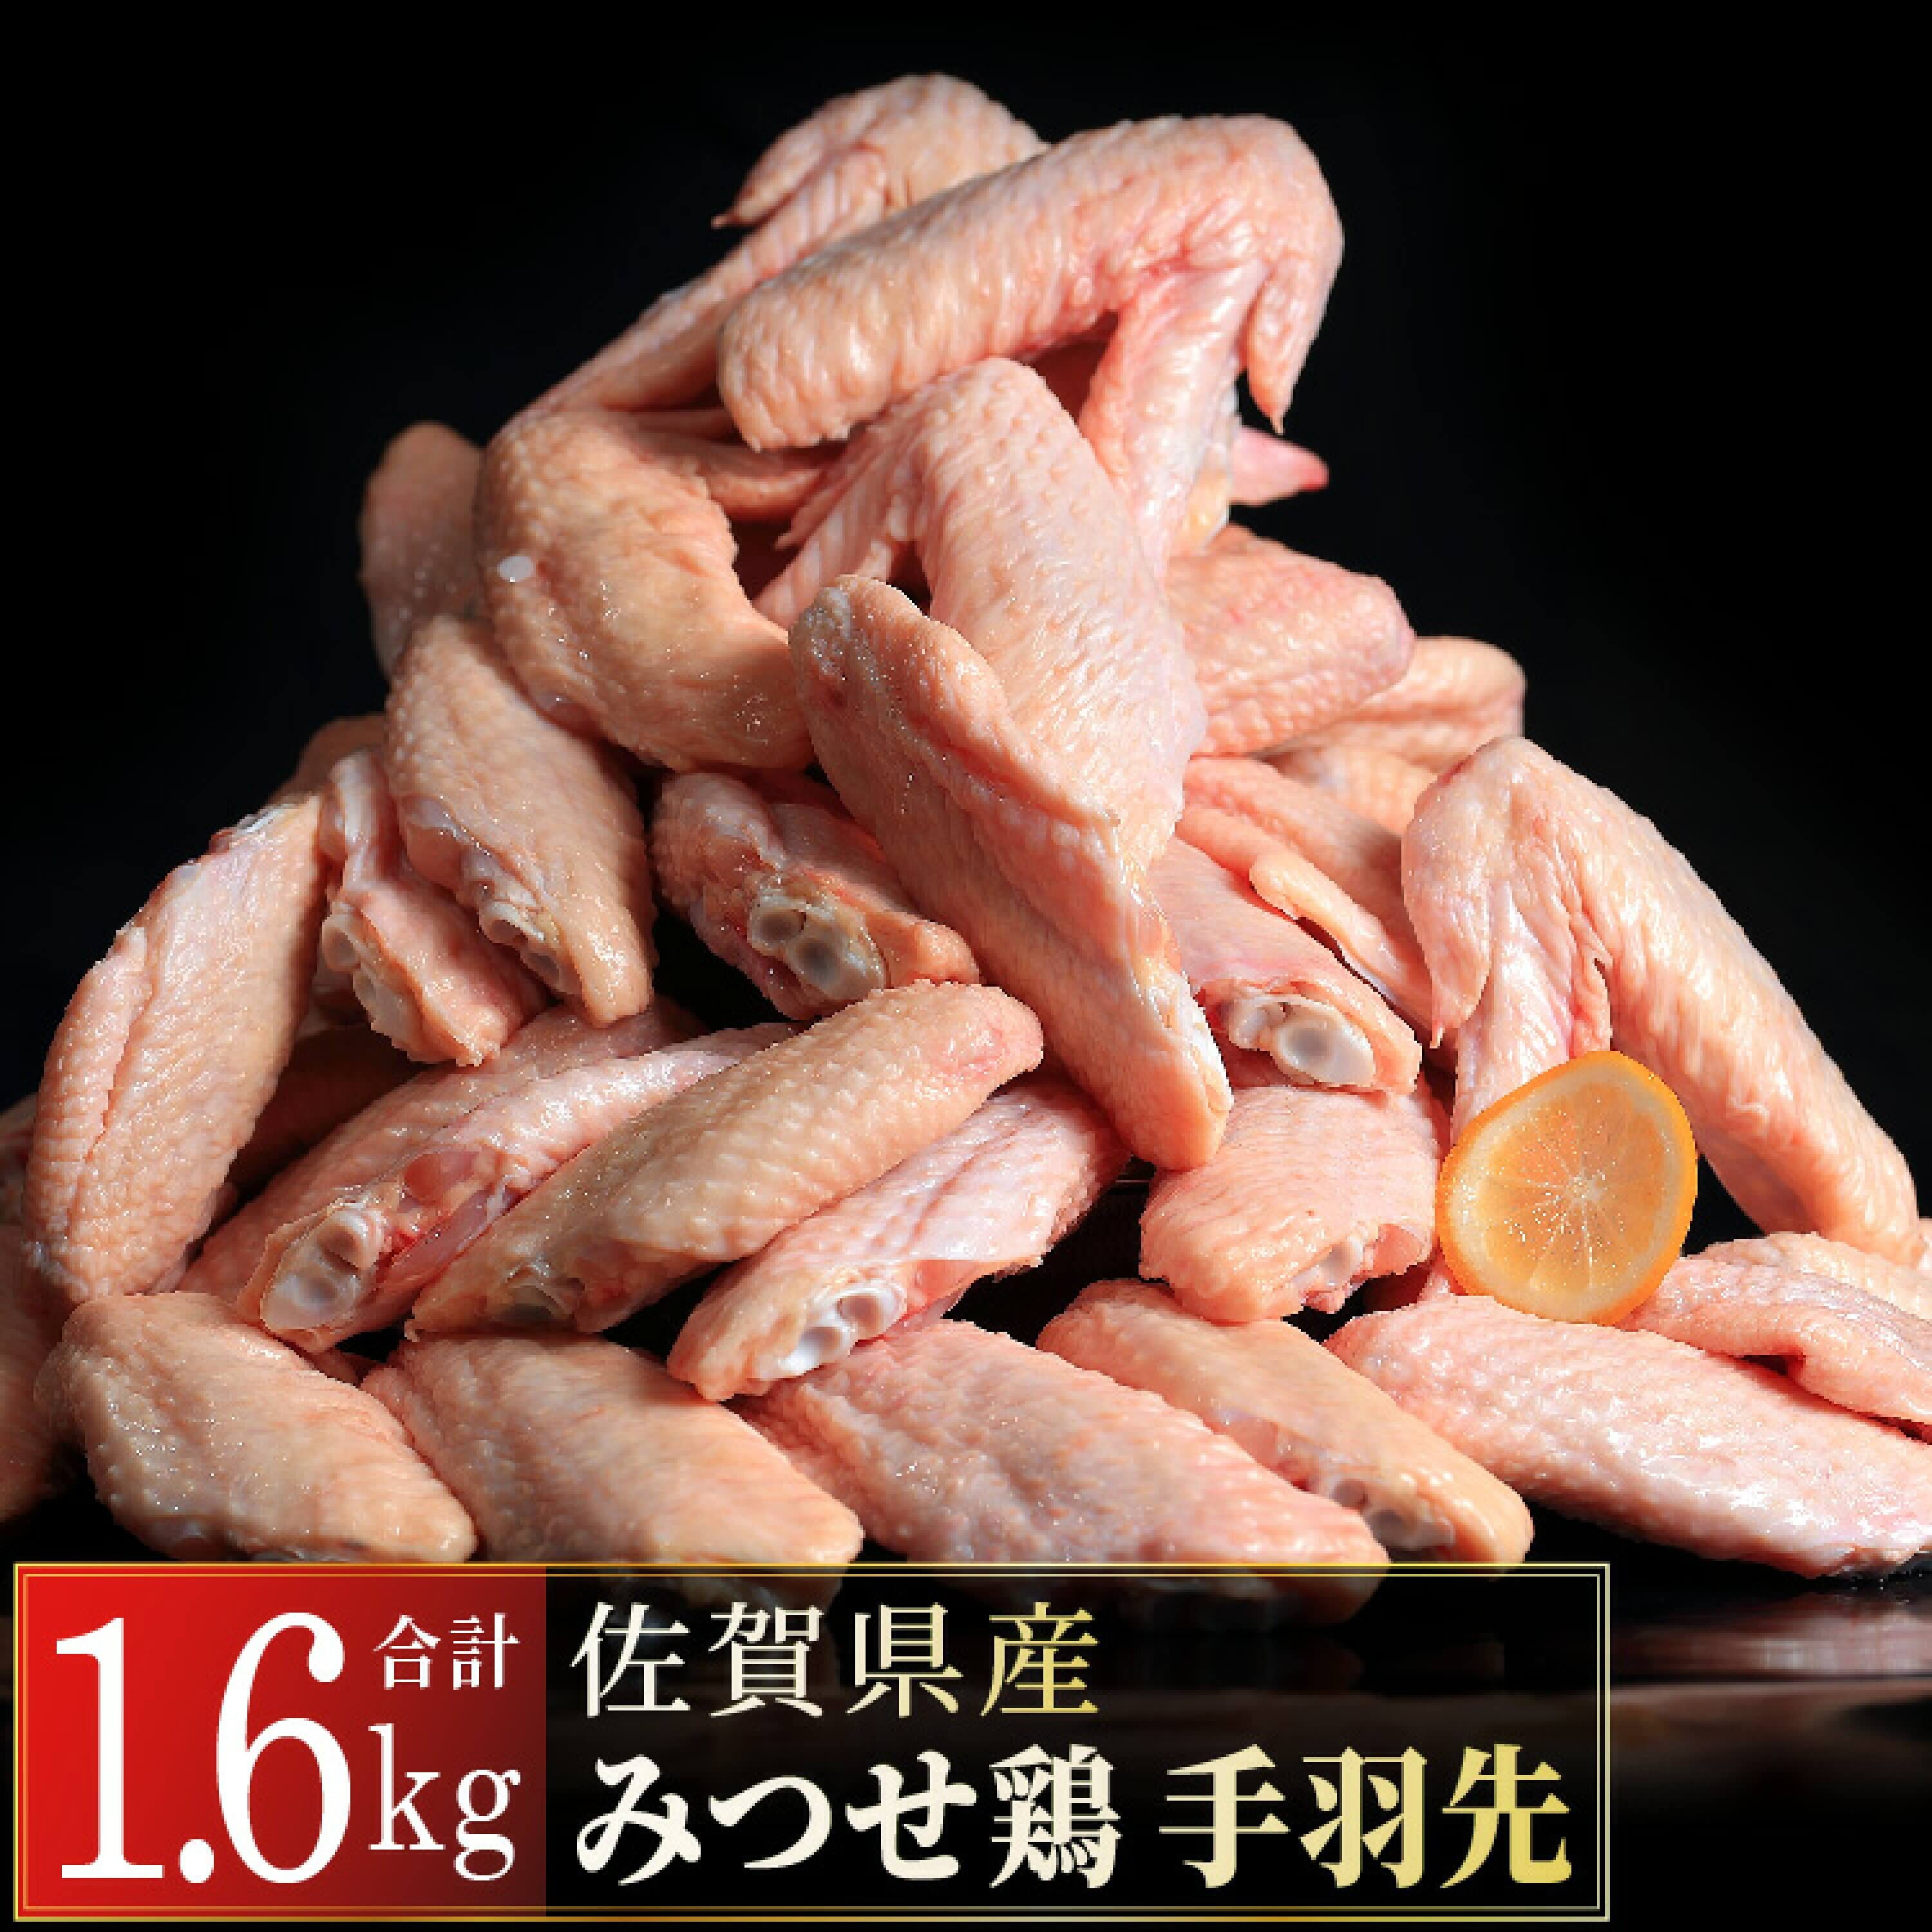 みつせ鶏 手羽先 1.6kg(400g×4)